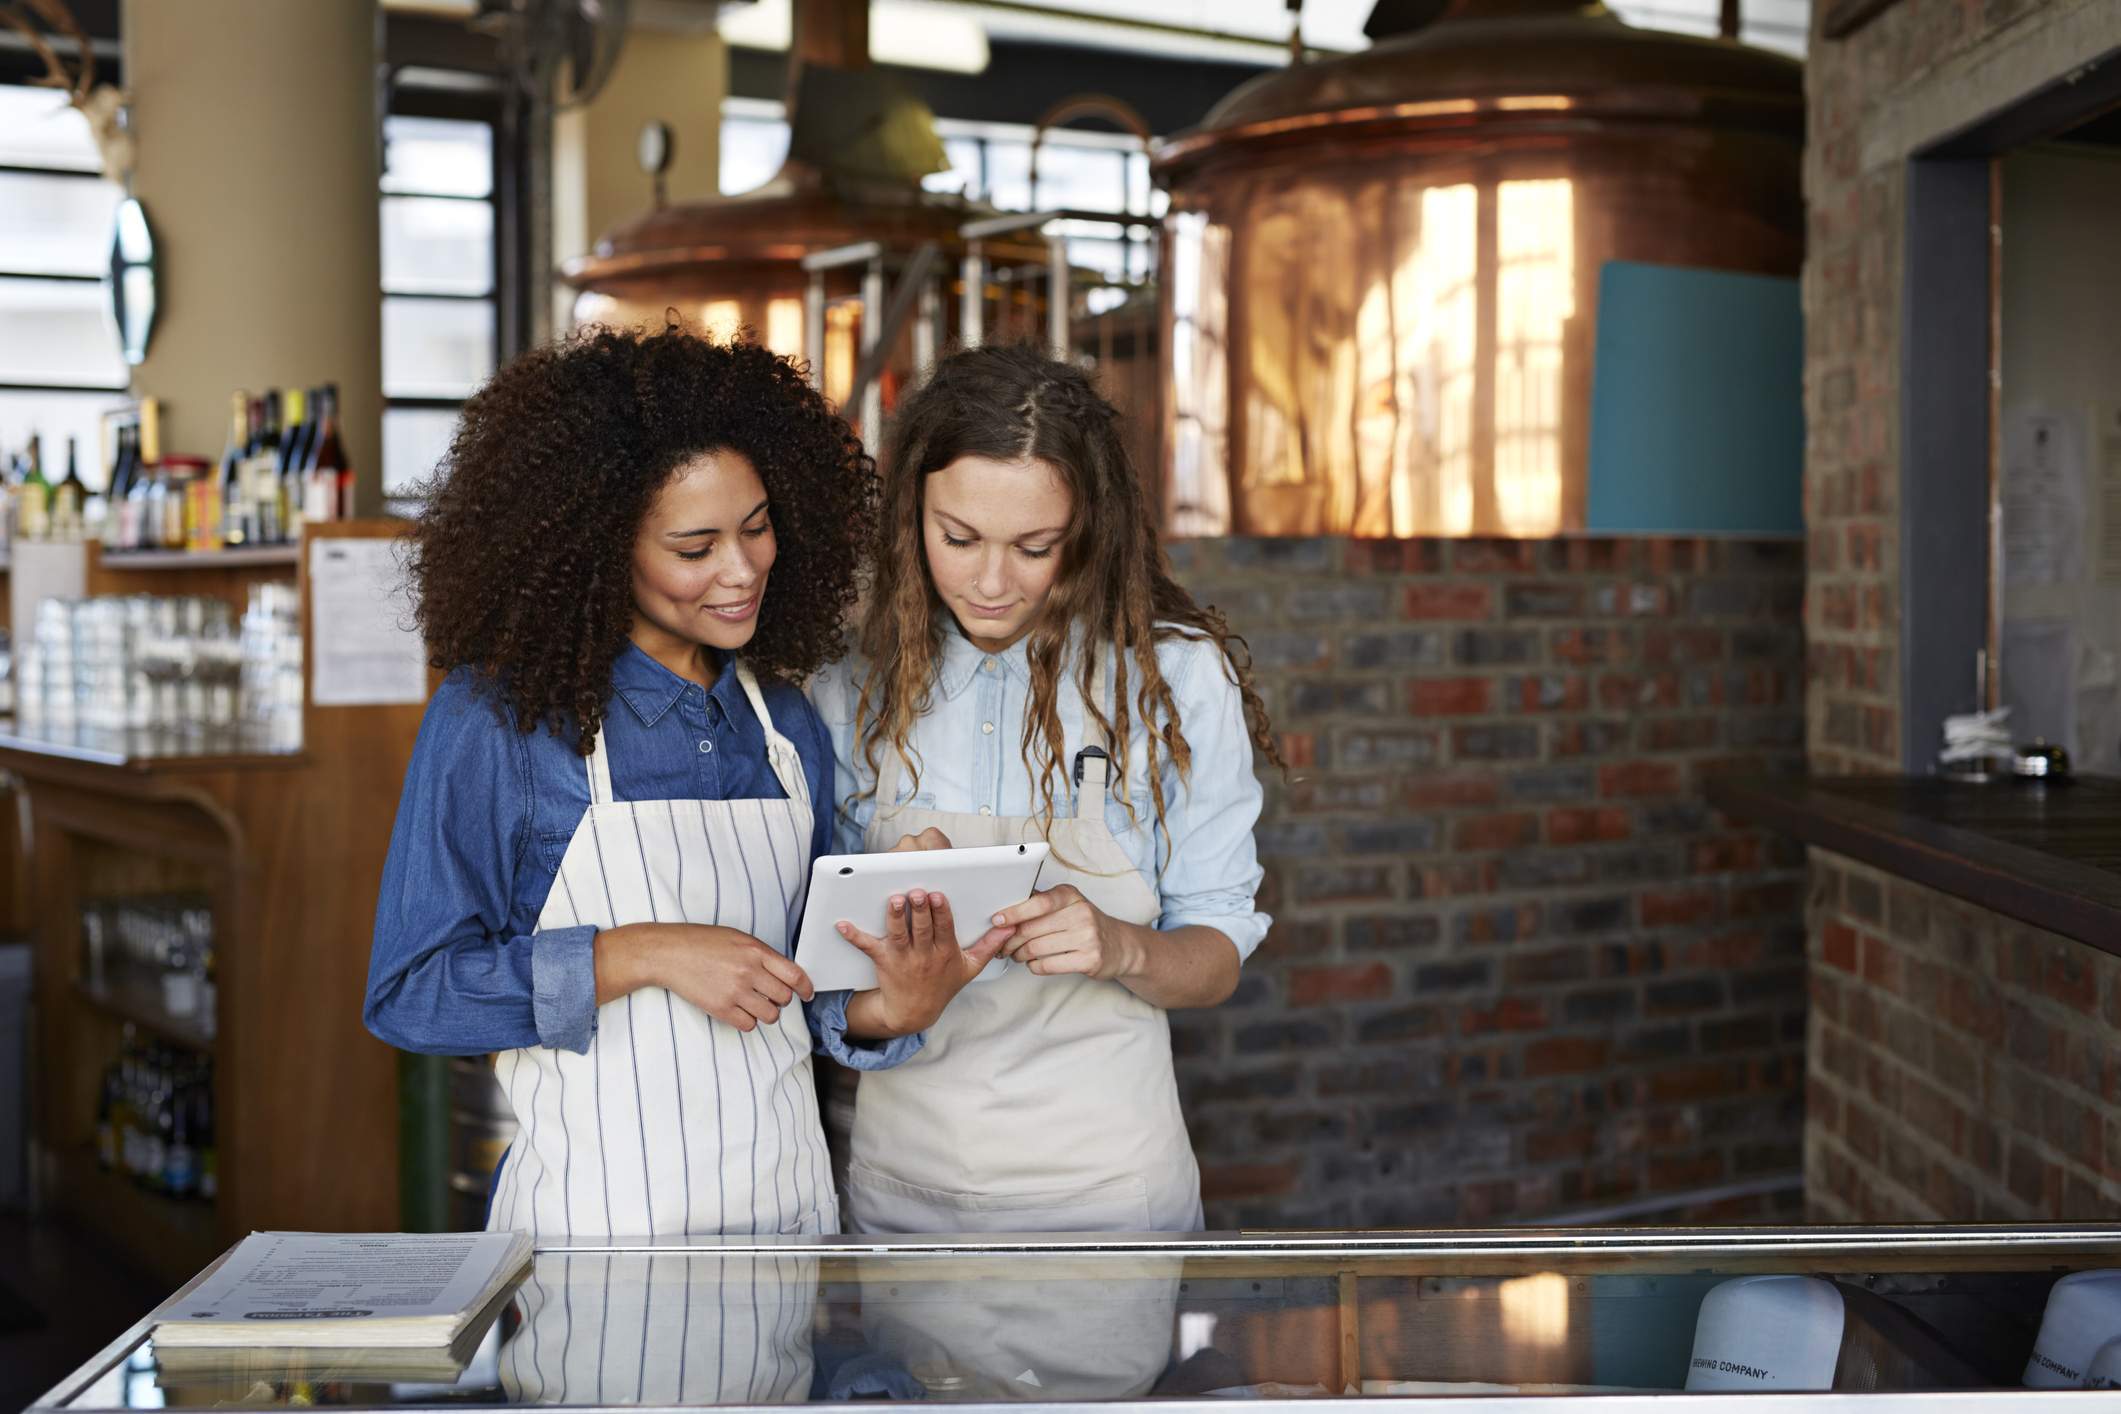 La imagen muestra a dos trabajadores de un restaurante. Una sostiene una tableta y le muestra a la otra mesera algo en la tableta.